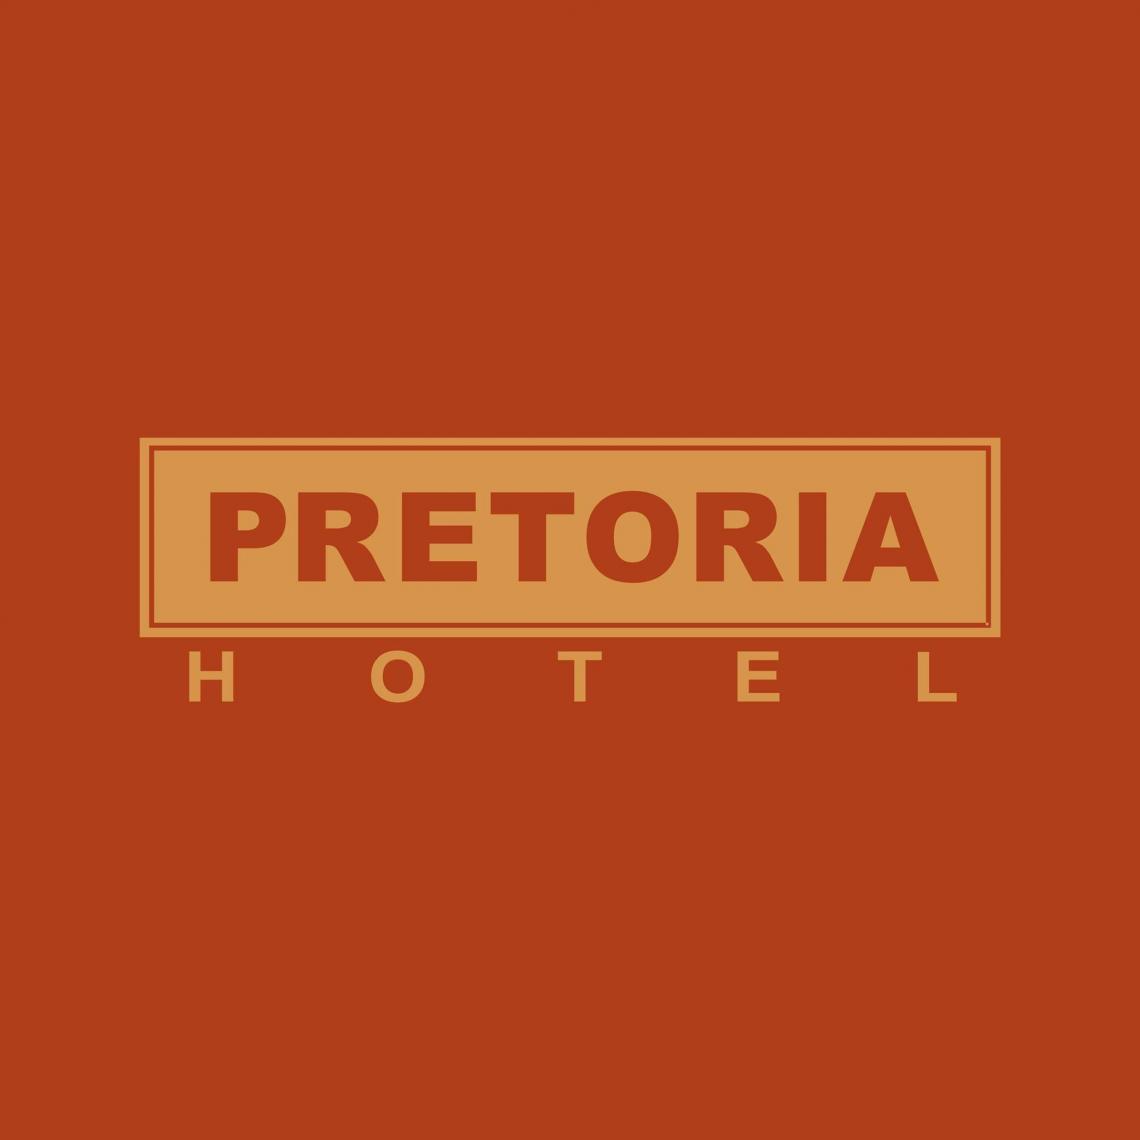 Pretoria Hotel